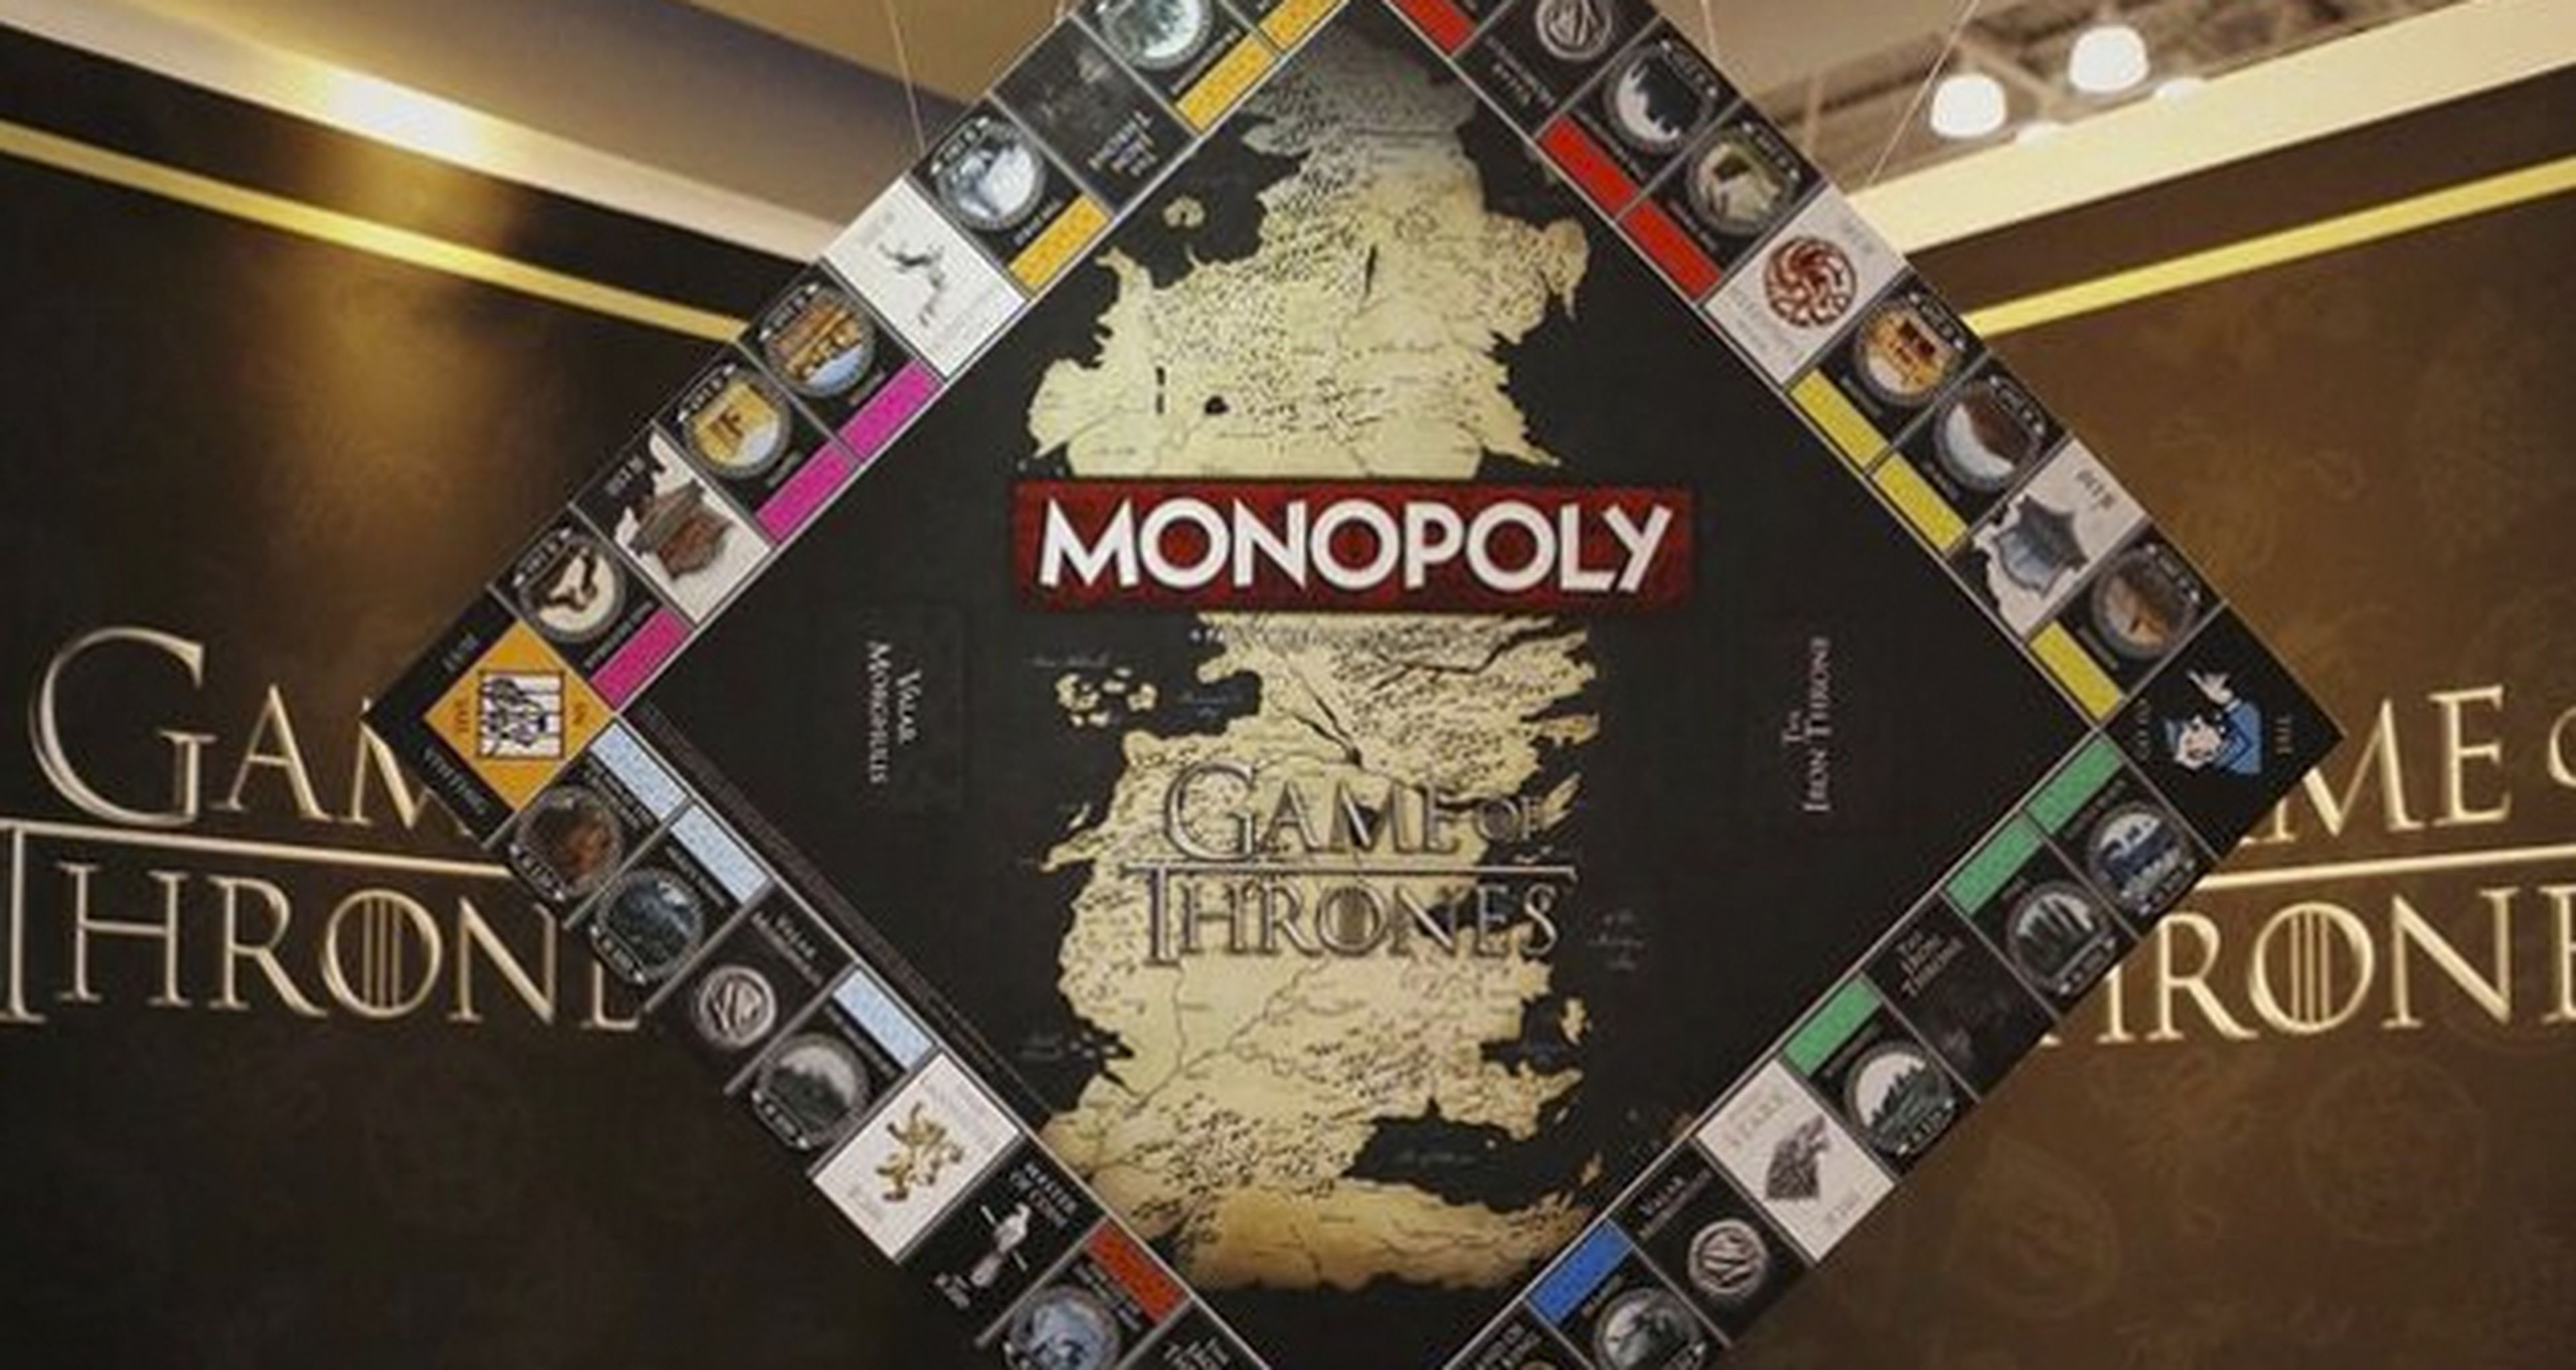 Juego de tronos estrena Monopoly inspirado en la serie